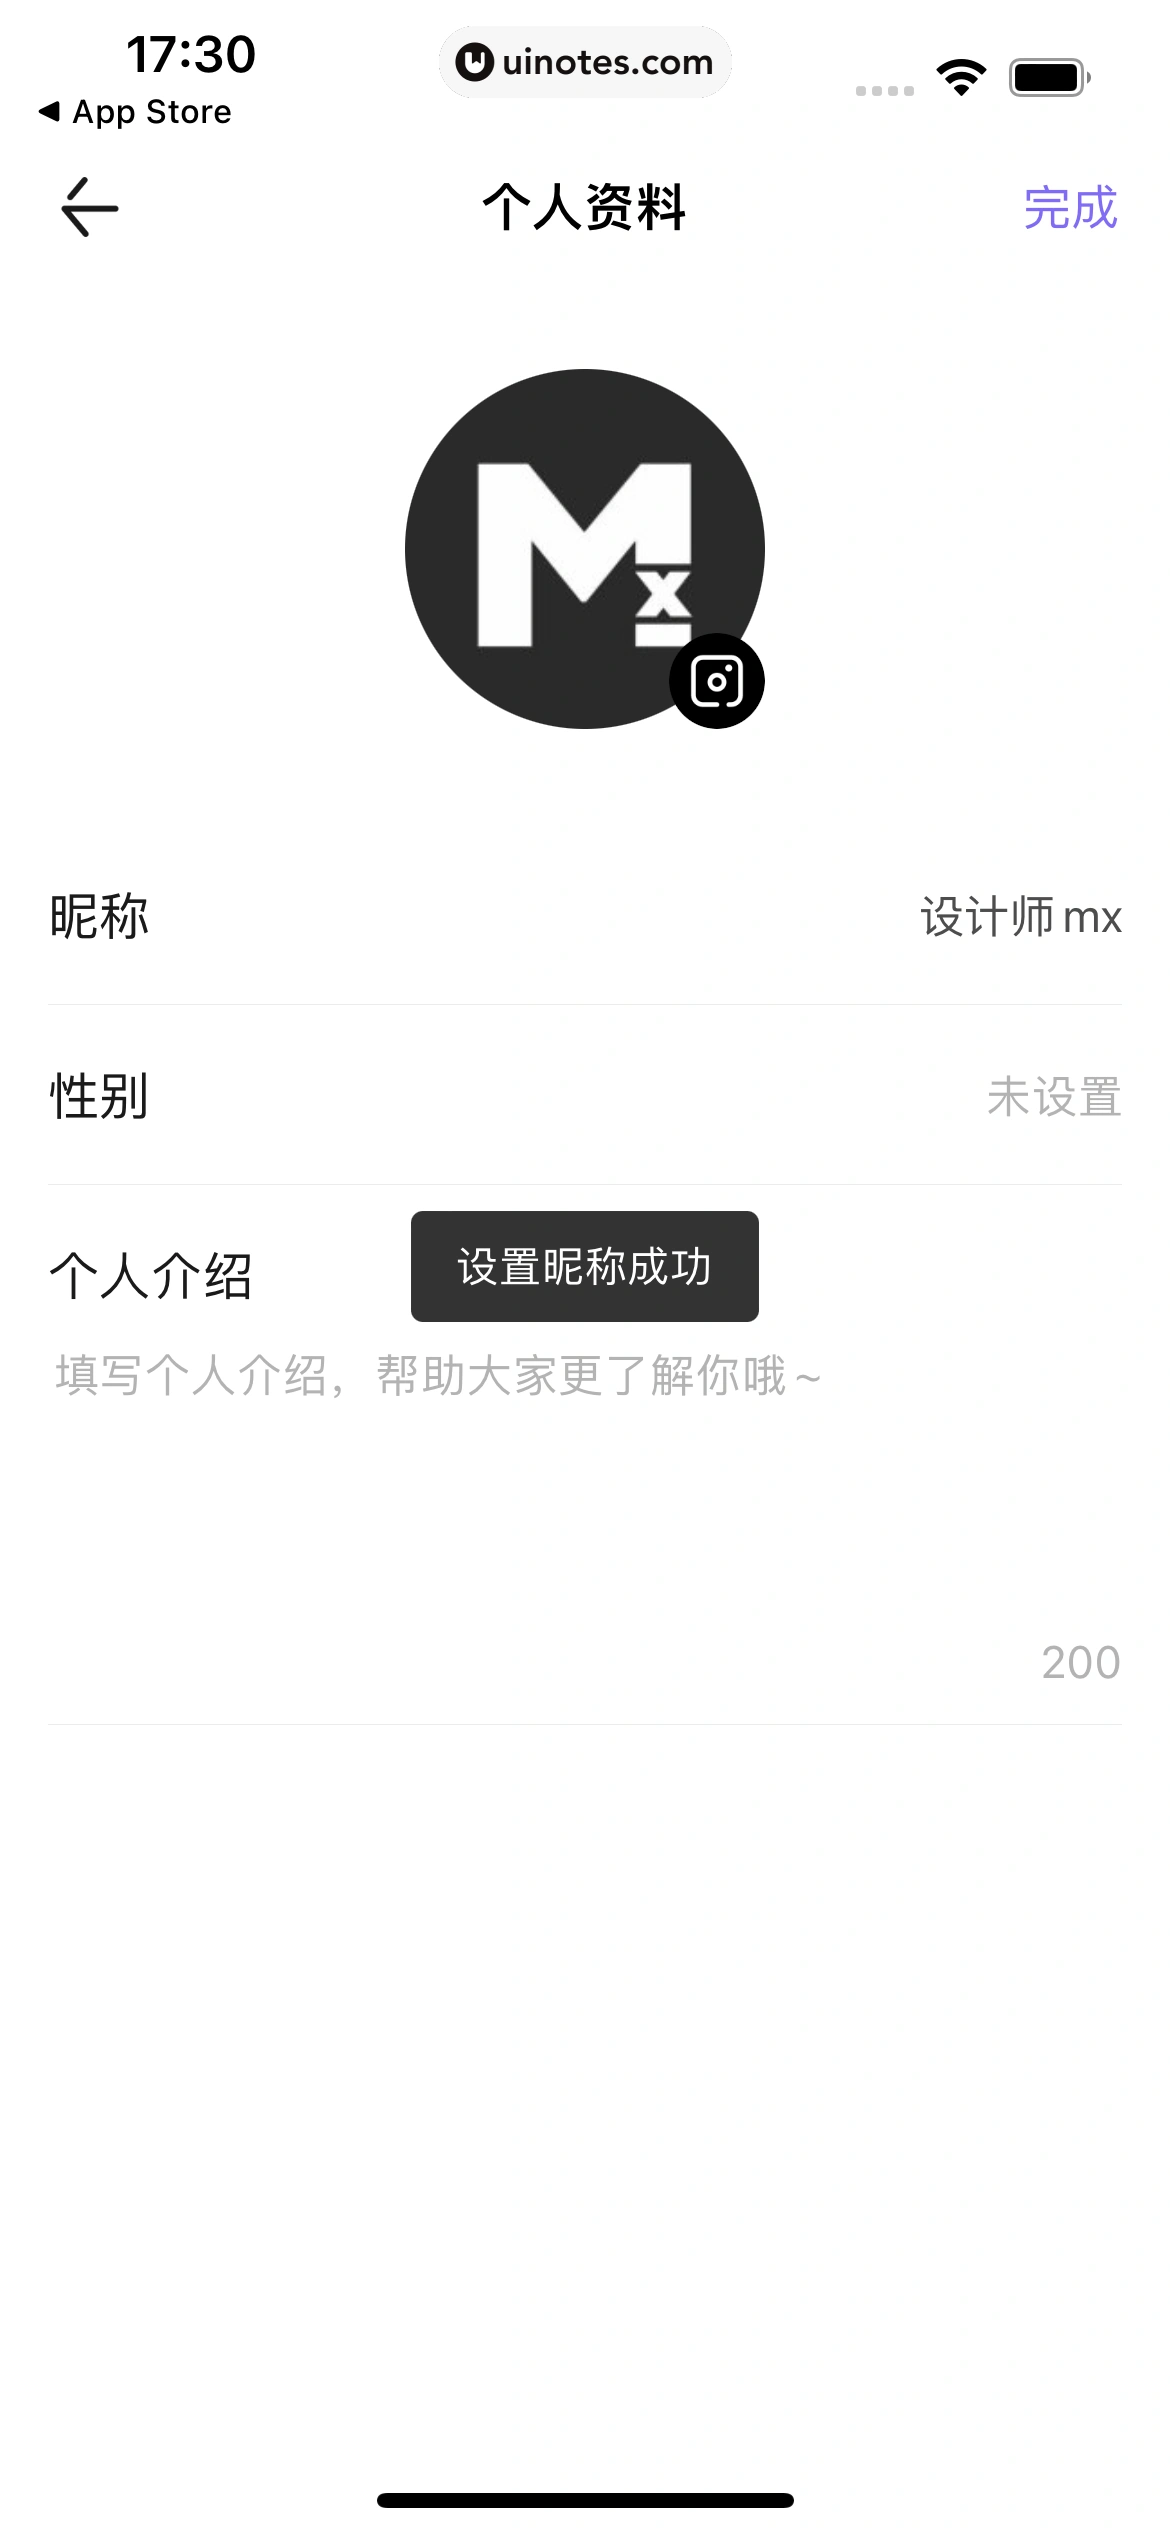 丁香医生 App 截图 028 - UI Notes